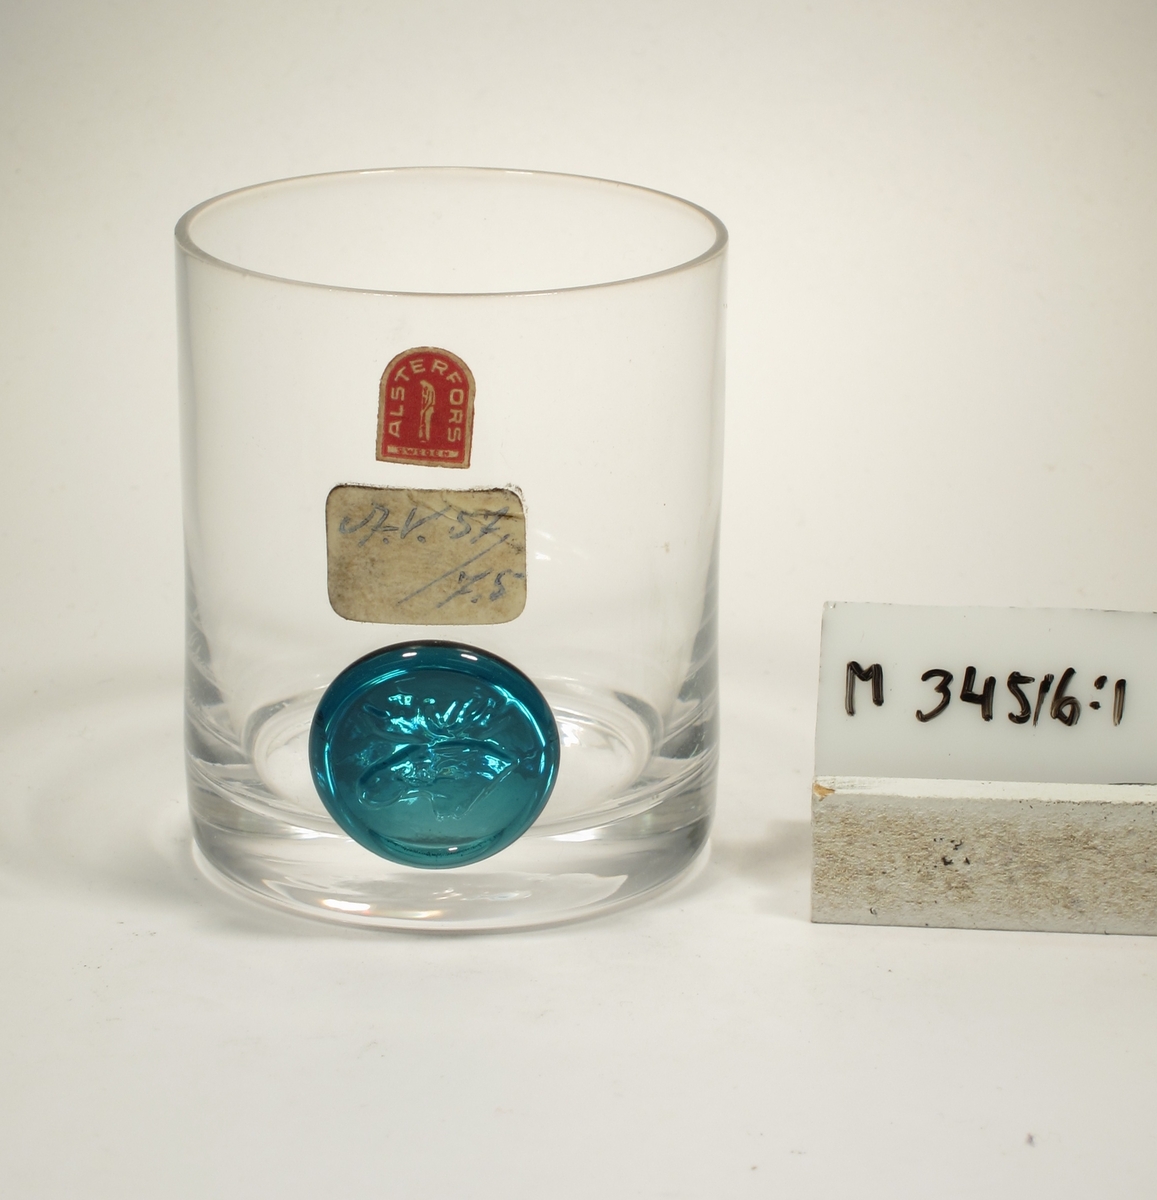 Design: Brukets egen formgivning. Cylinderformad kupa med påklippt blått märke som stämplats med ett älghuvud.
Etikett: Bågformad, röd med vit text, glasblåsare i mitten: ALSTERFORS SWEDEN